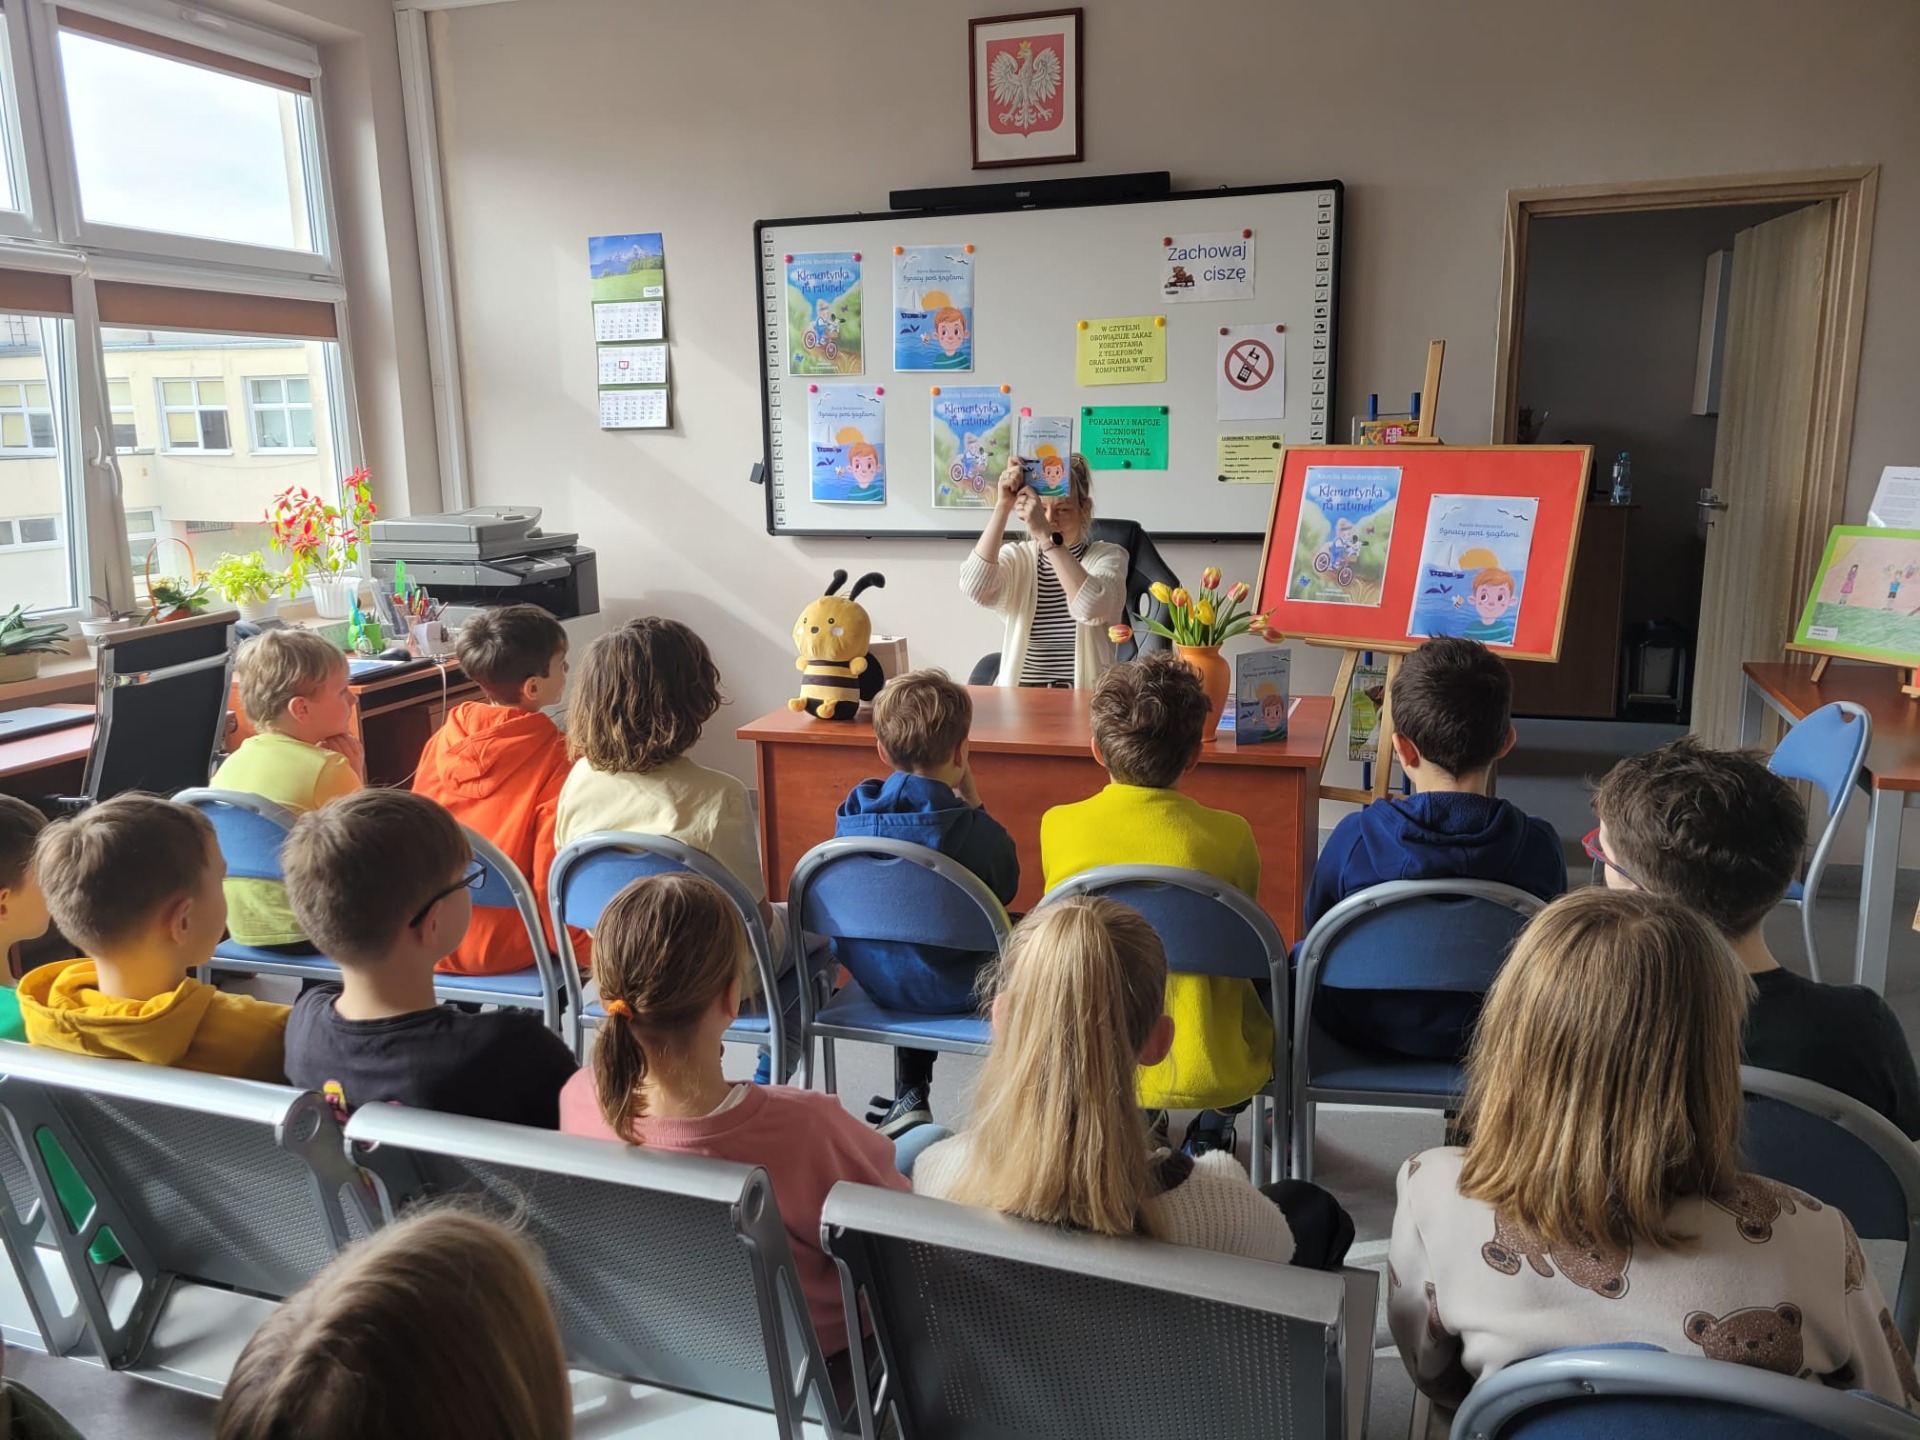 Na zdjęciu widzimy panią Kamilę Bondarowicz, autorkę książek dla dzieci, która pokazuje uczniom ilustrację do opowiadania o Ignasiu